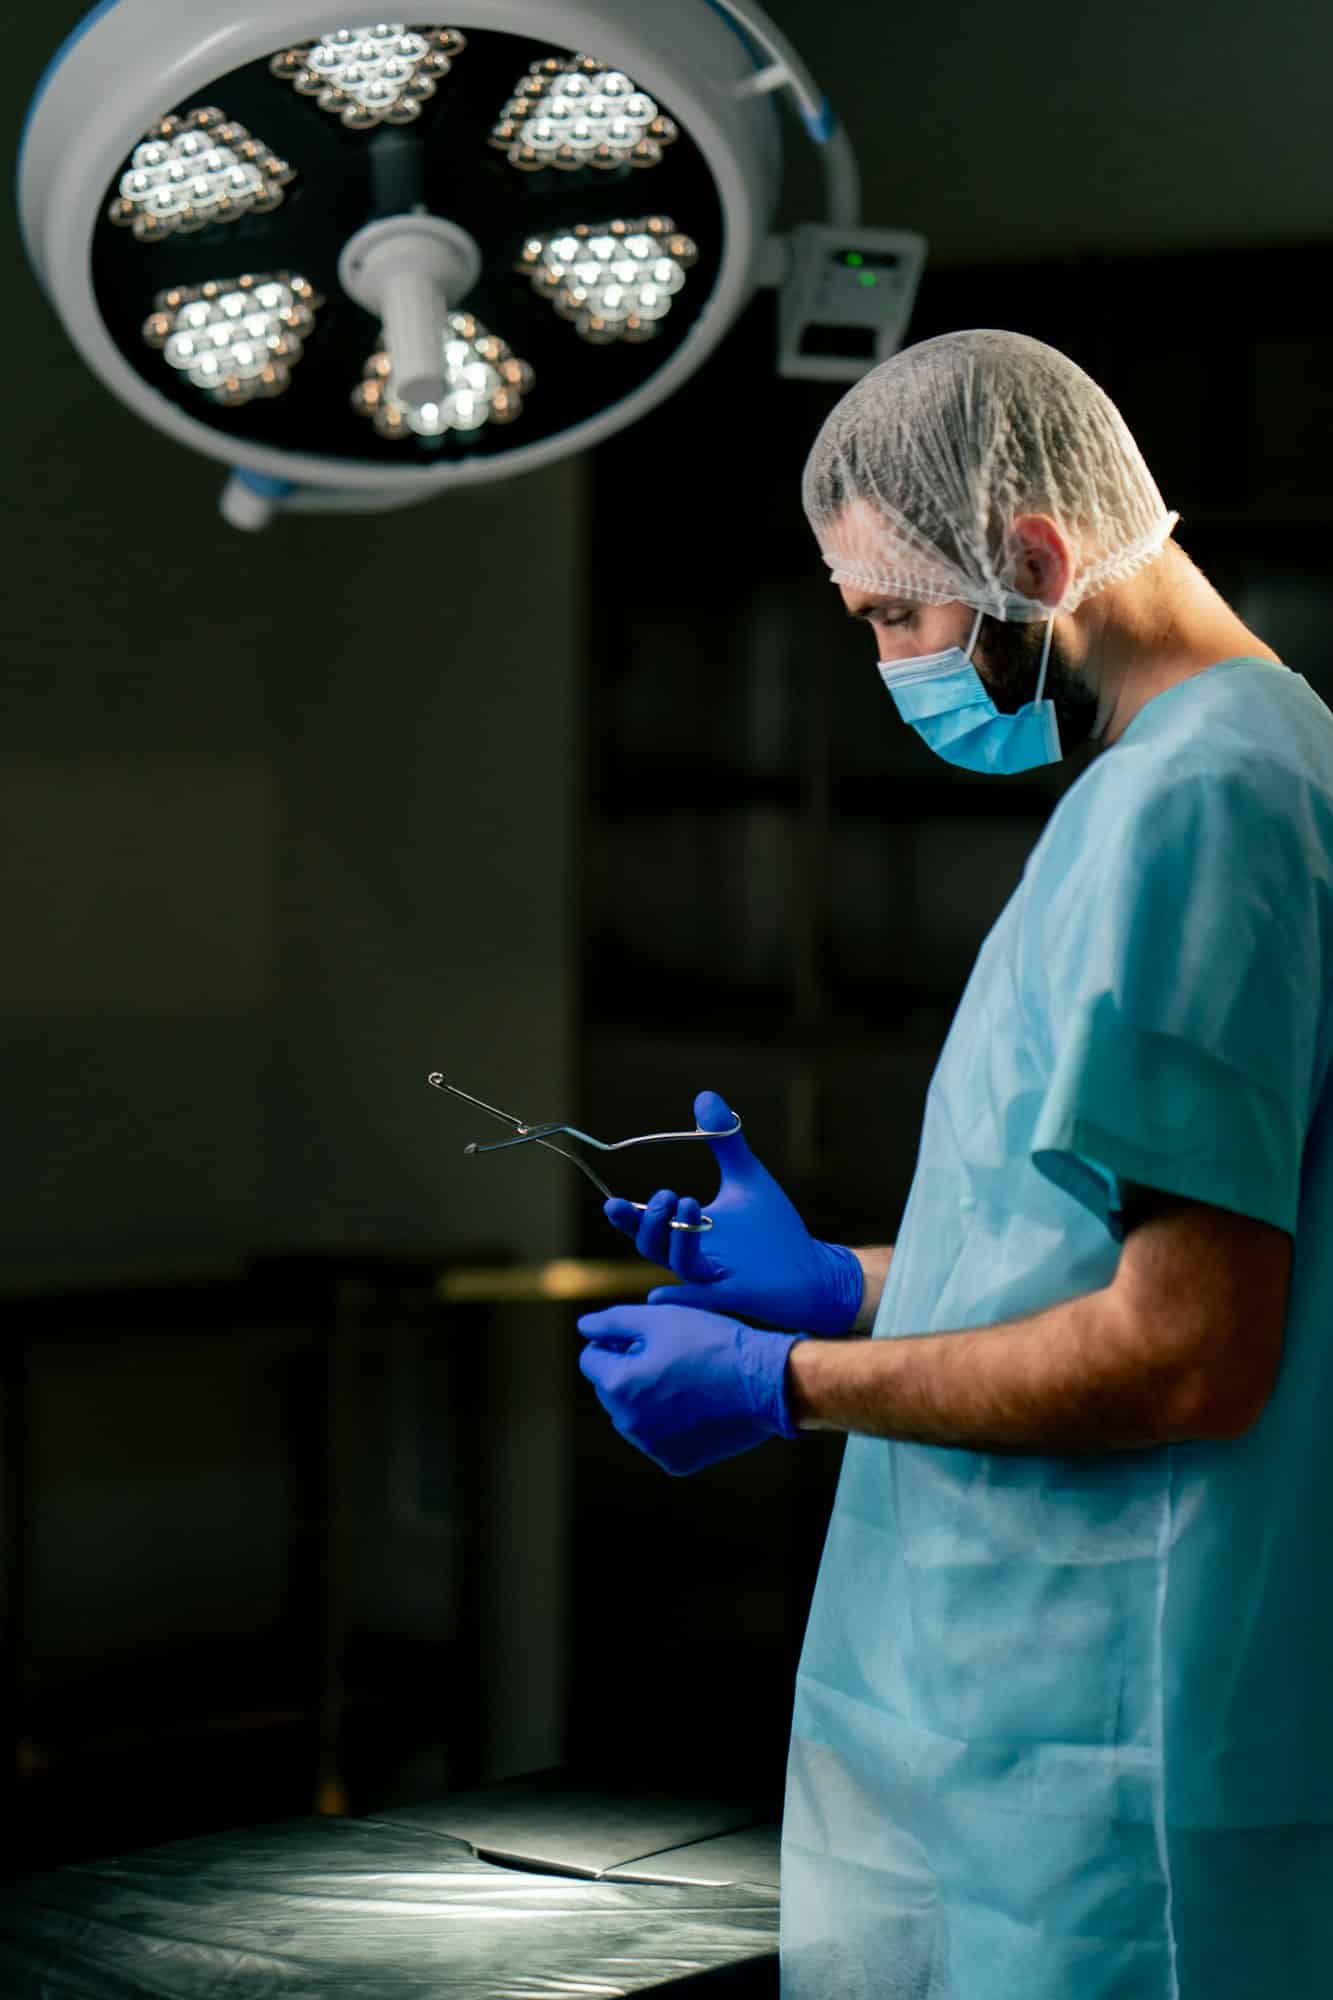 Χειρουργείο: Ποιες επεμβάσεις είναι πιο επικίνδυνες για τους ηλικιωμένους